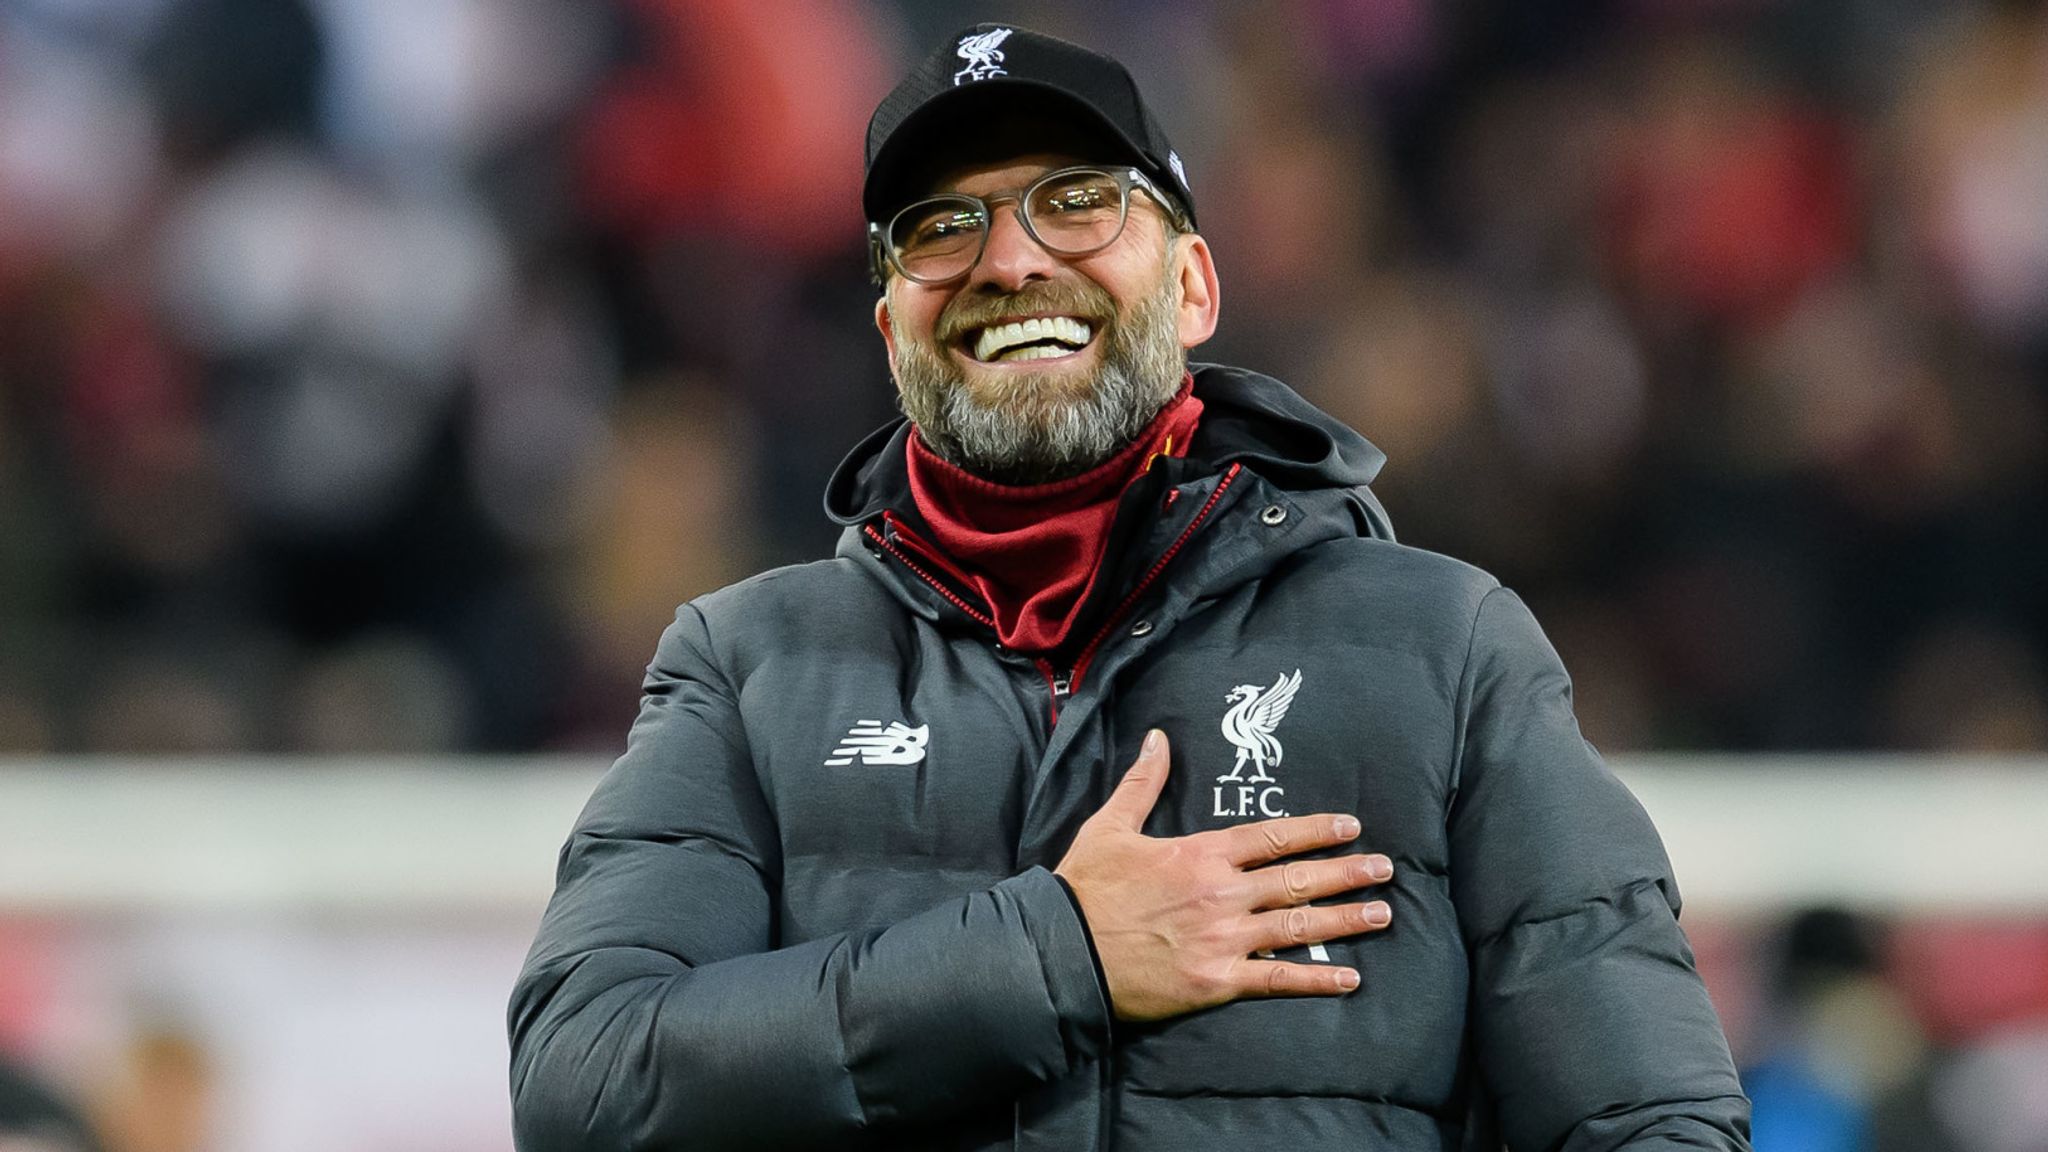 Offiziell! Jürgen Klopp verlängert langfristig beim FC Liverpool